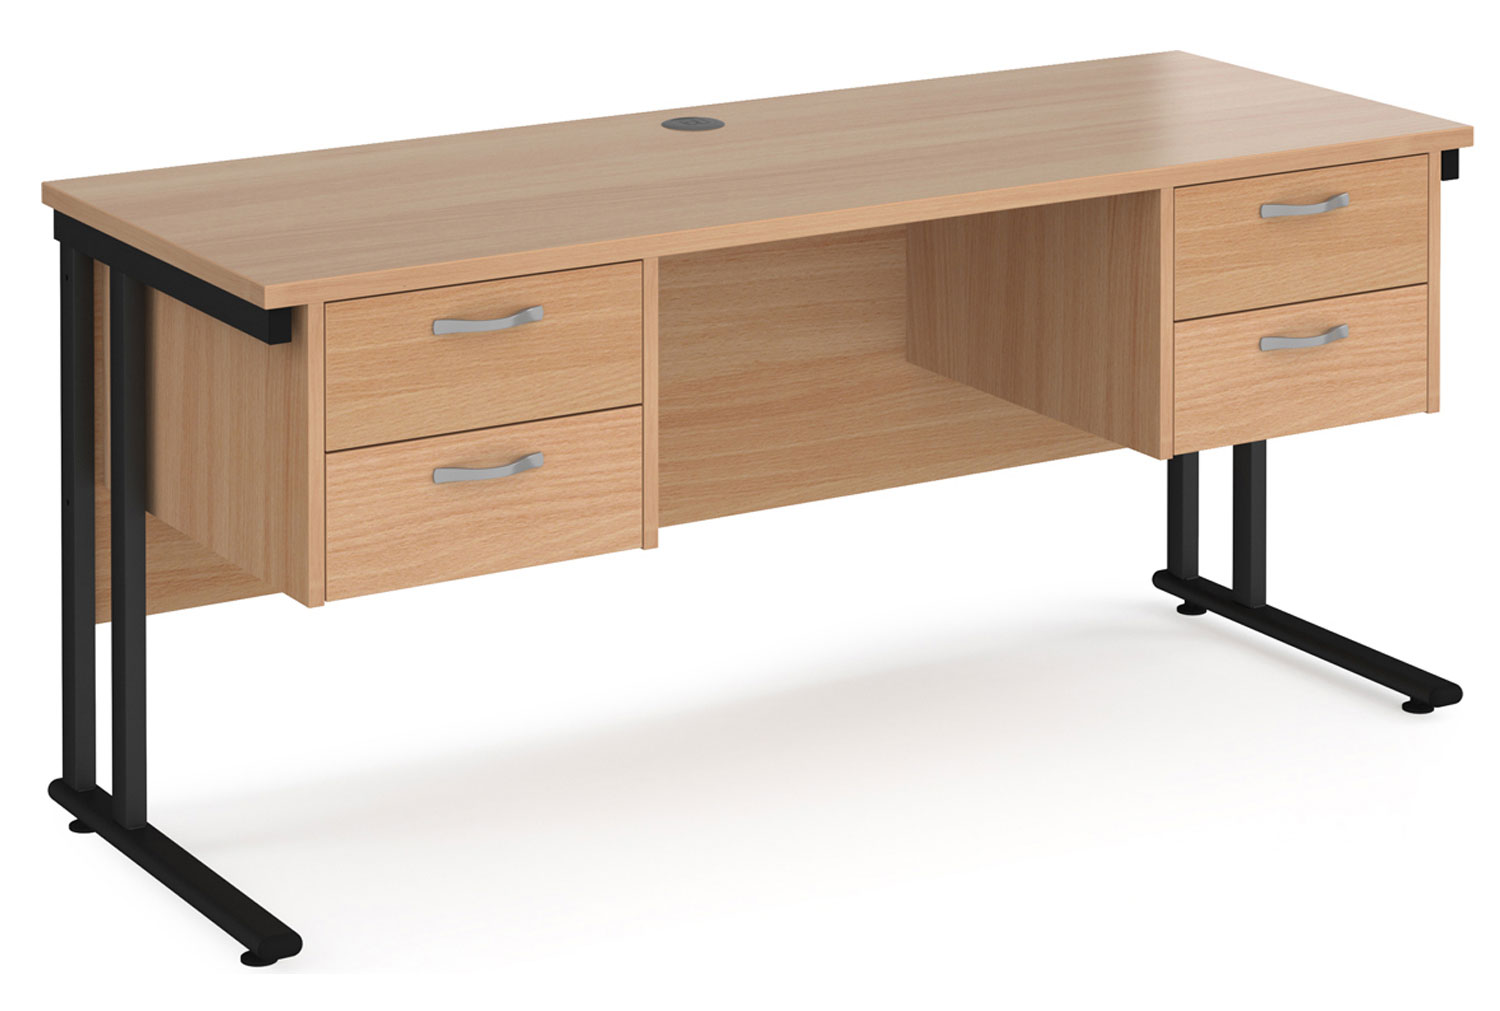 Value Line Deluxe C-Leg Narrow Rectangular Office Desk 2+2 Drawers (Black Legs), 160w60dx73h (cm), Beech, Fully Installed